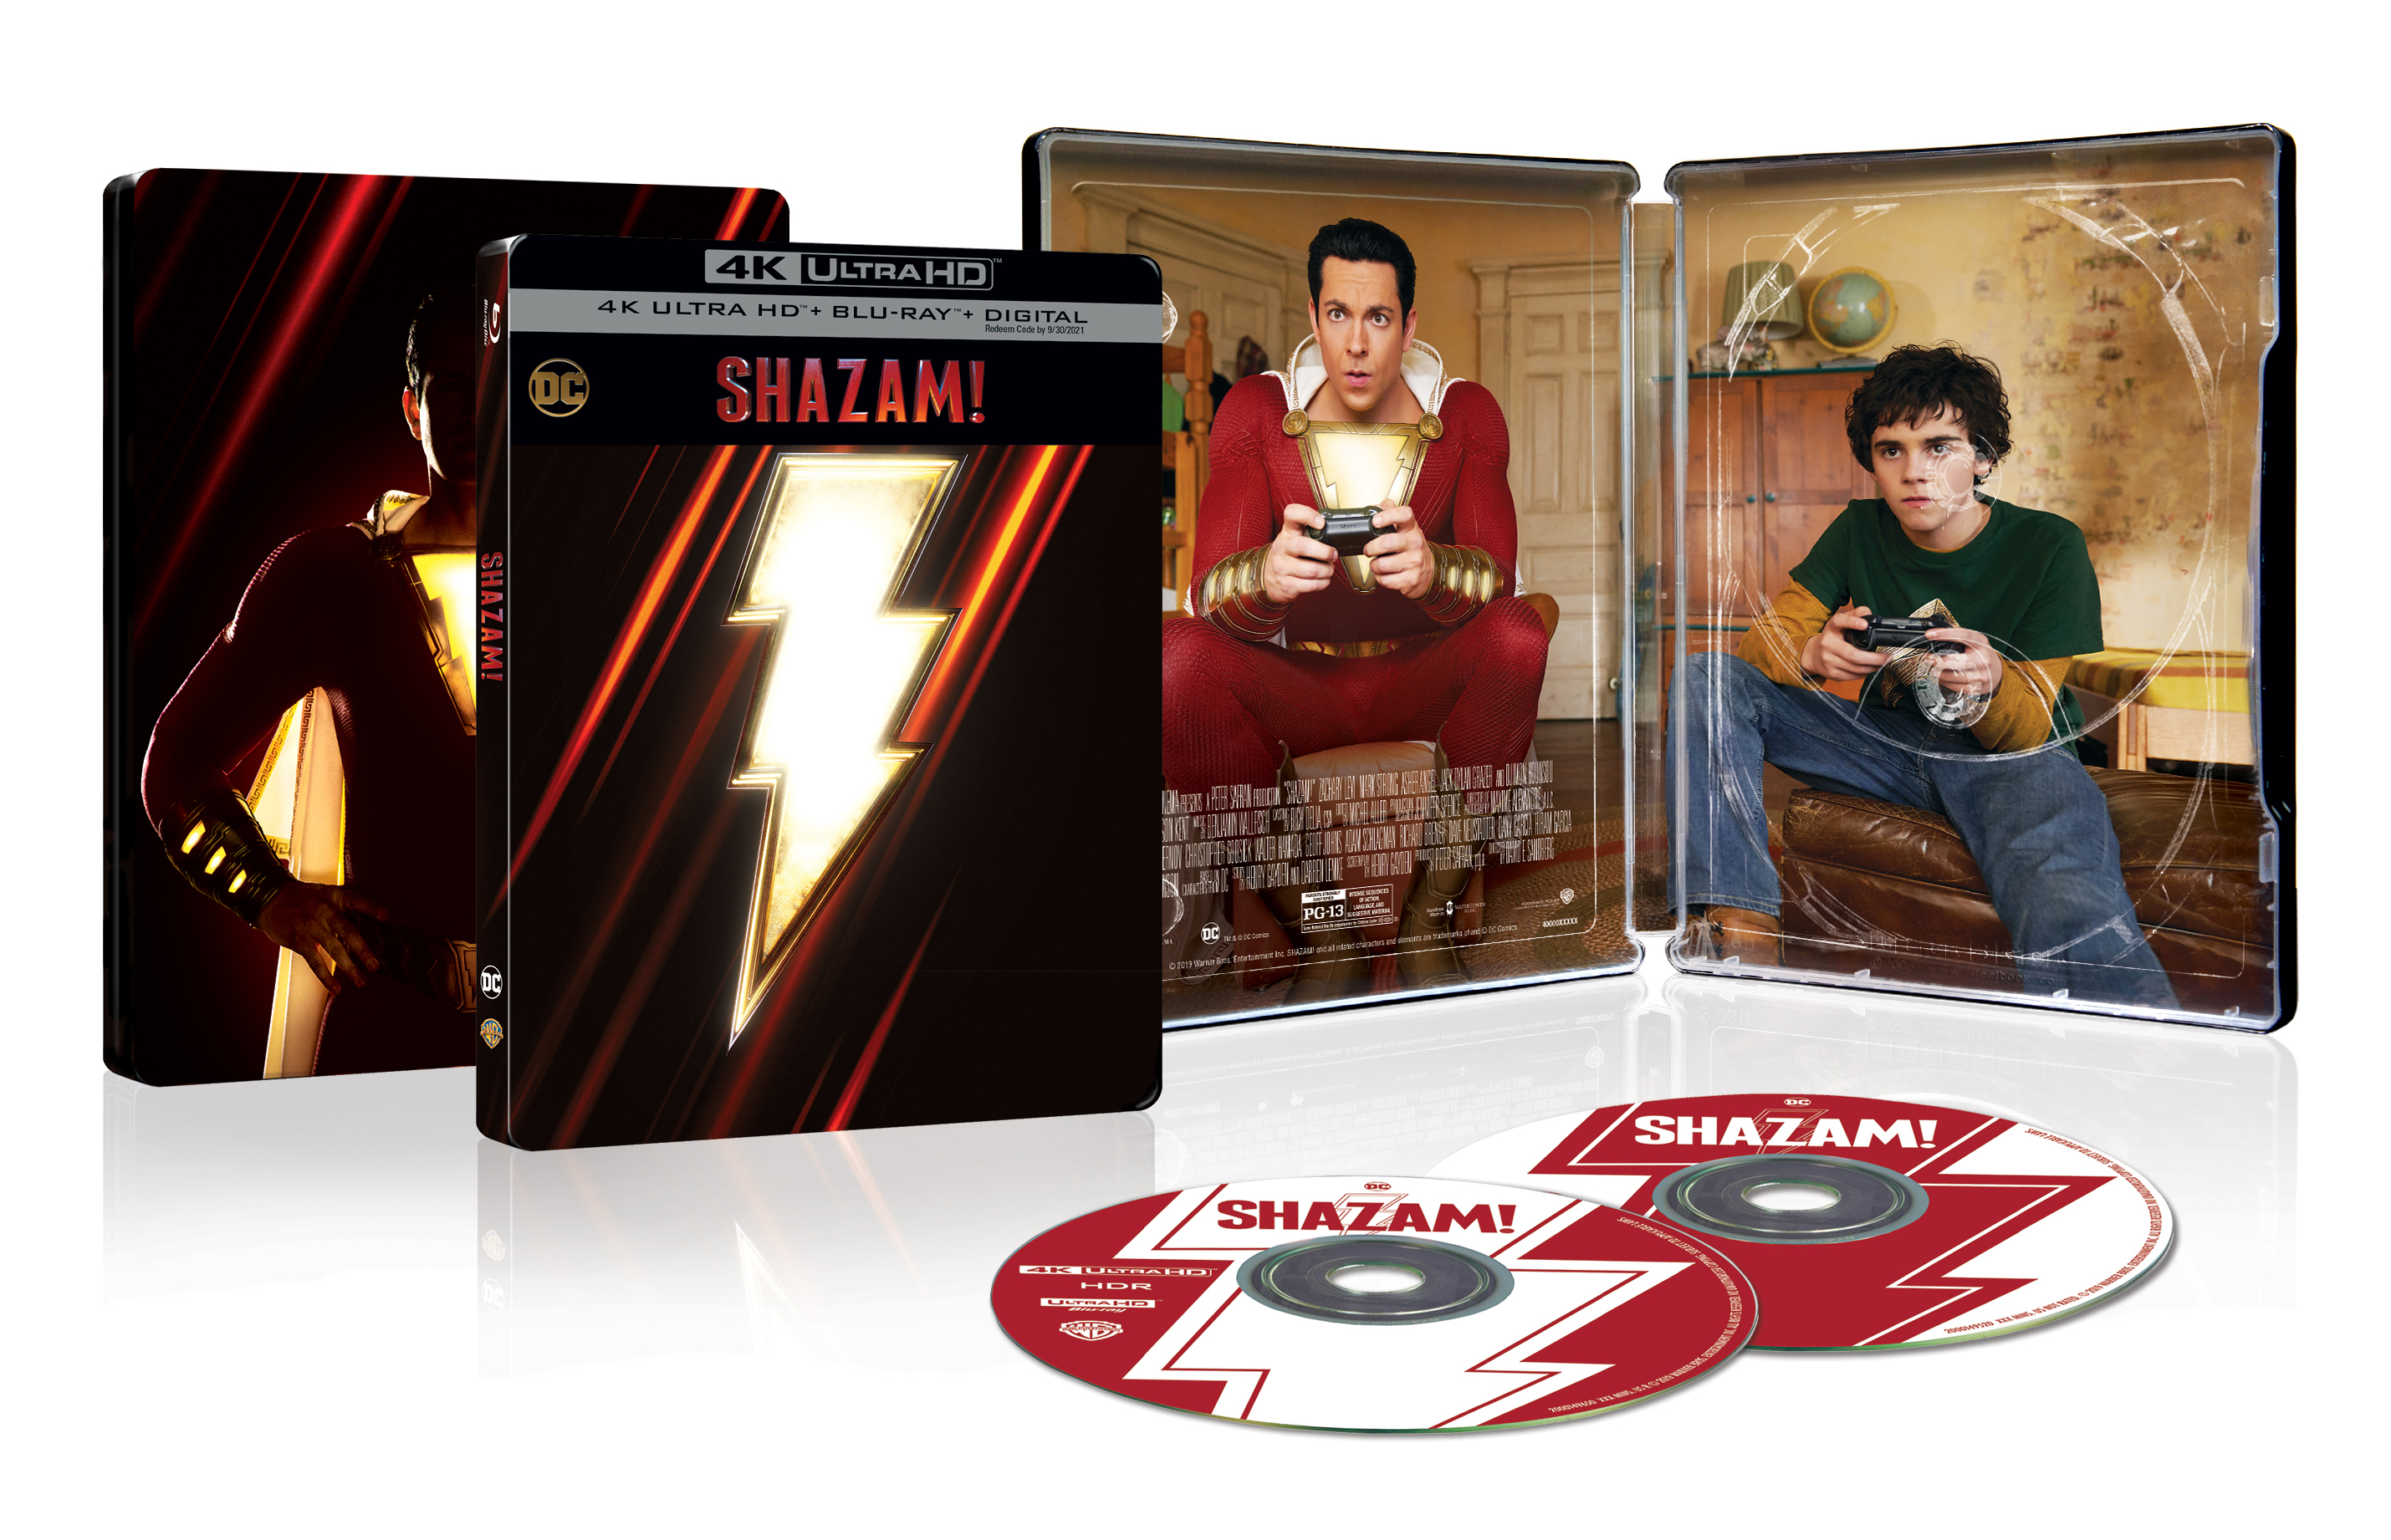 Shazam! [SteelBook] [4K Ultra HD Blu-ray/Blu-ray] [Only @ Best Buy] [2019]